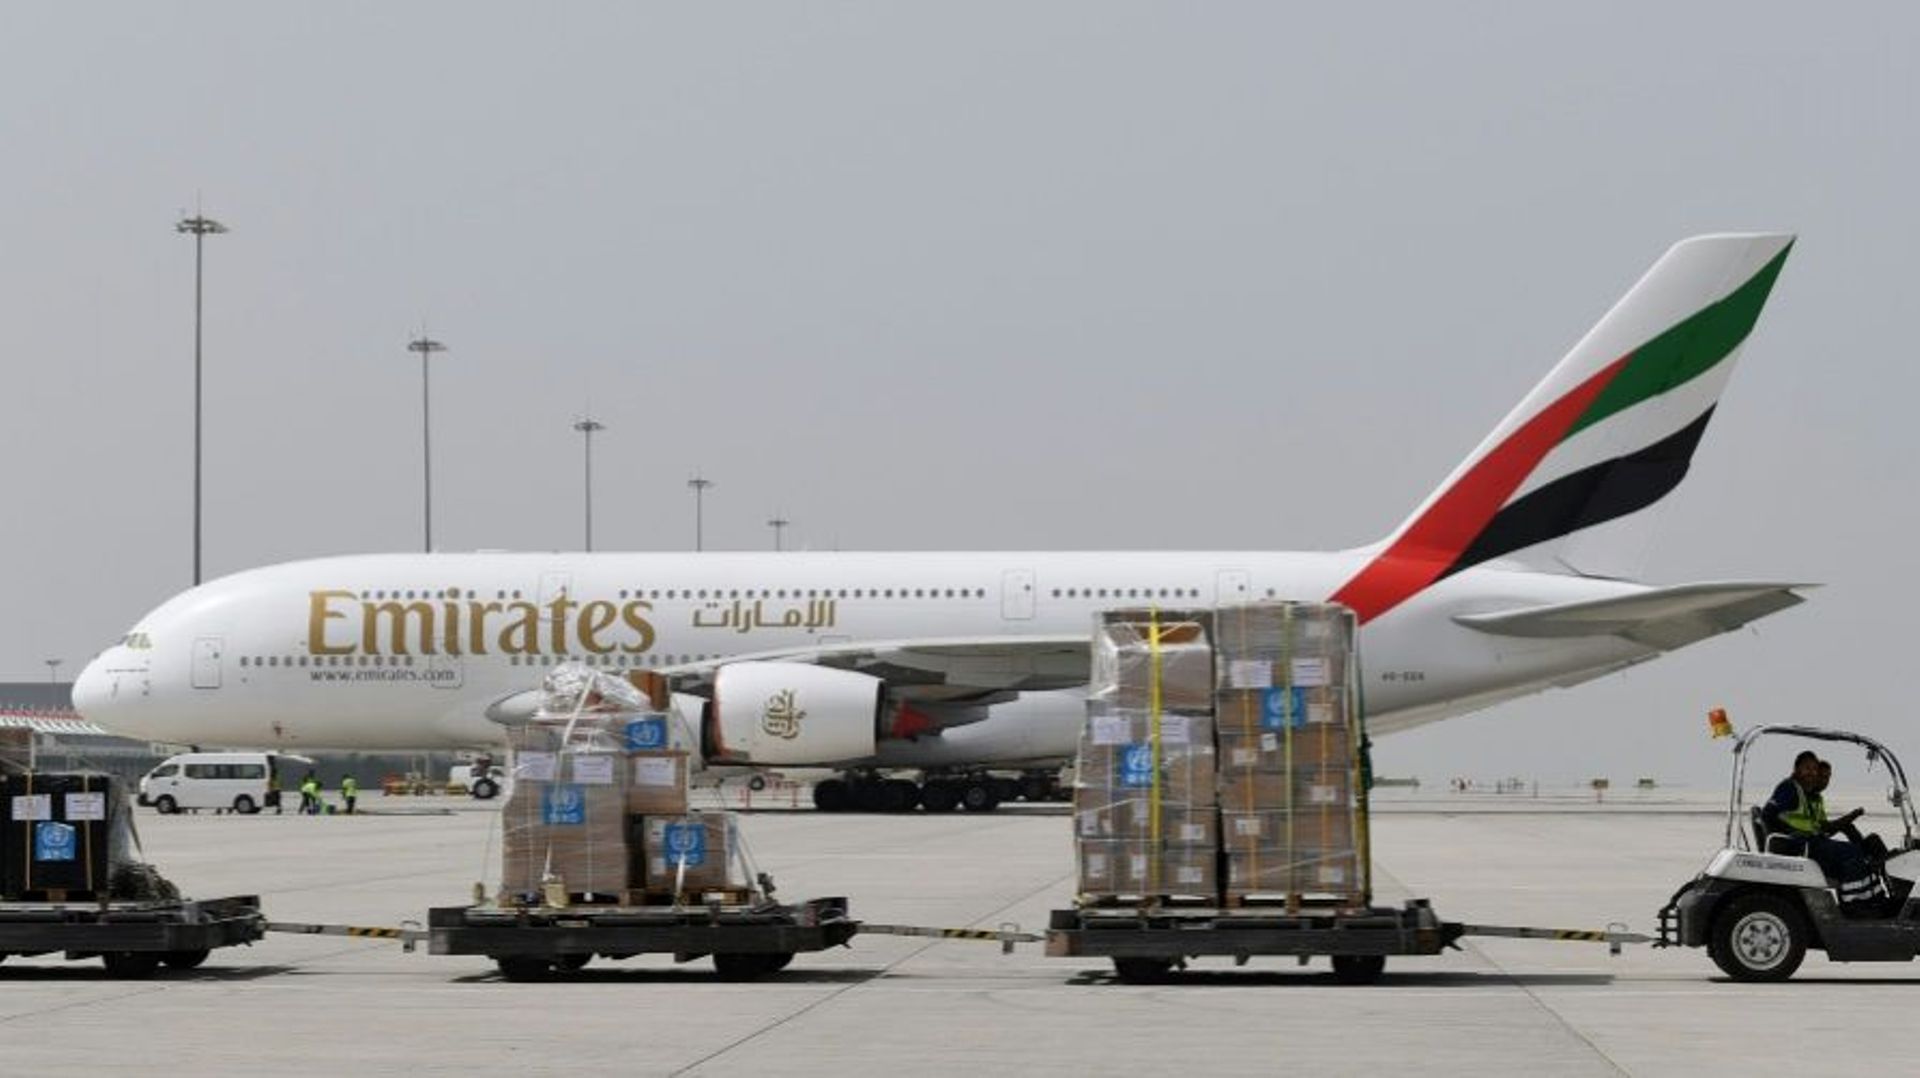 emirates-va-interrompre-tous-ses-vols-commerciaux-a-compter-de-mercredi